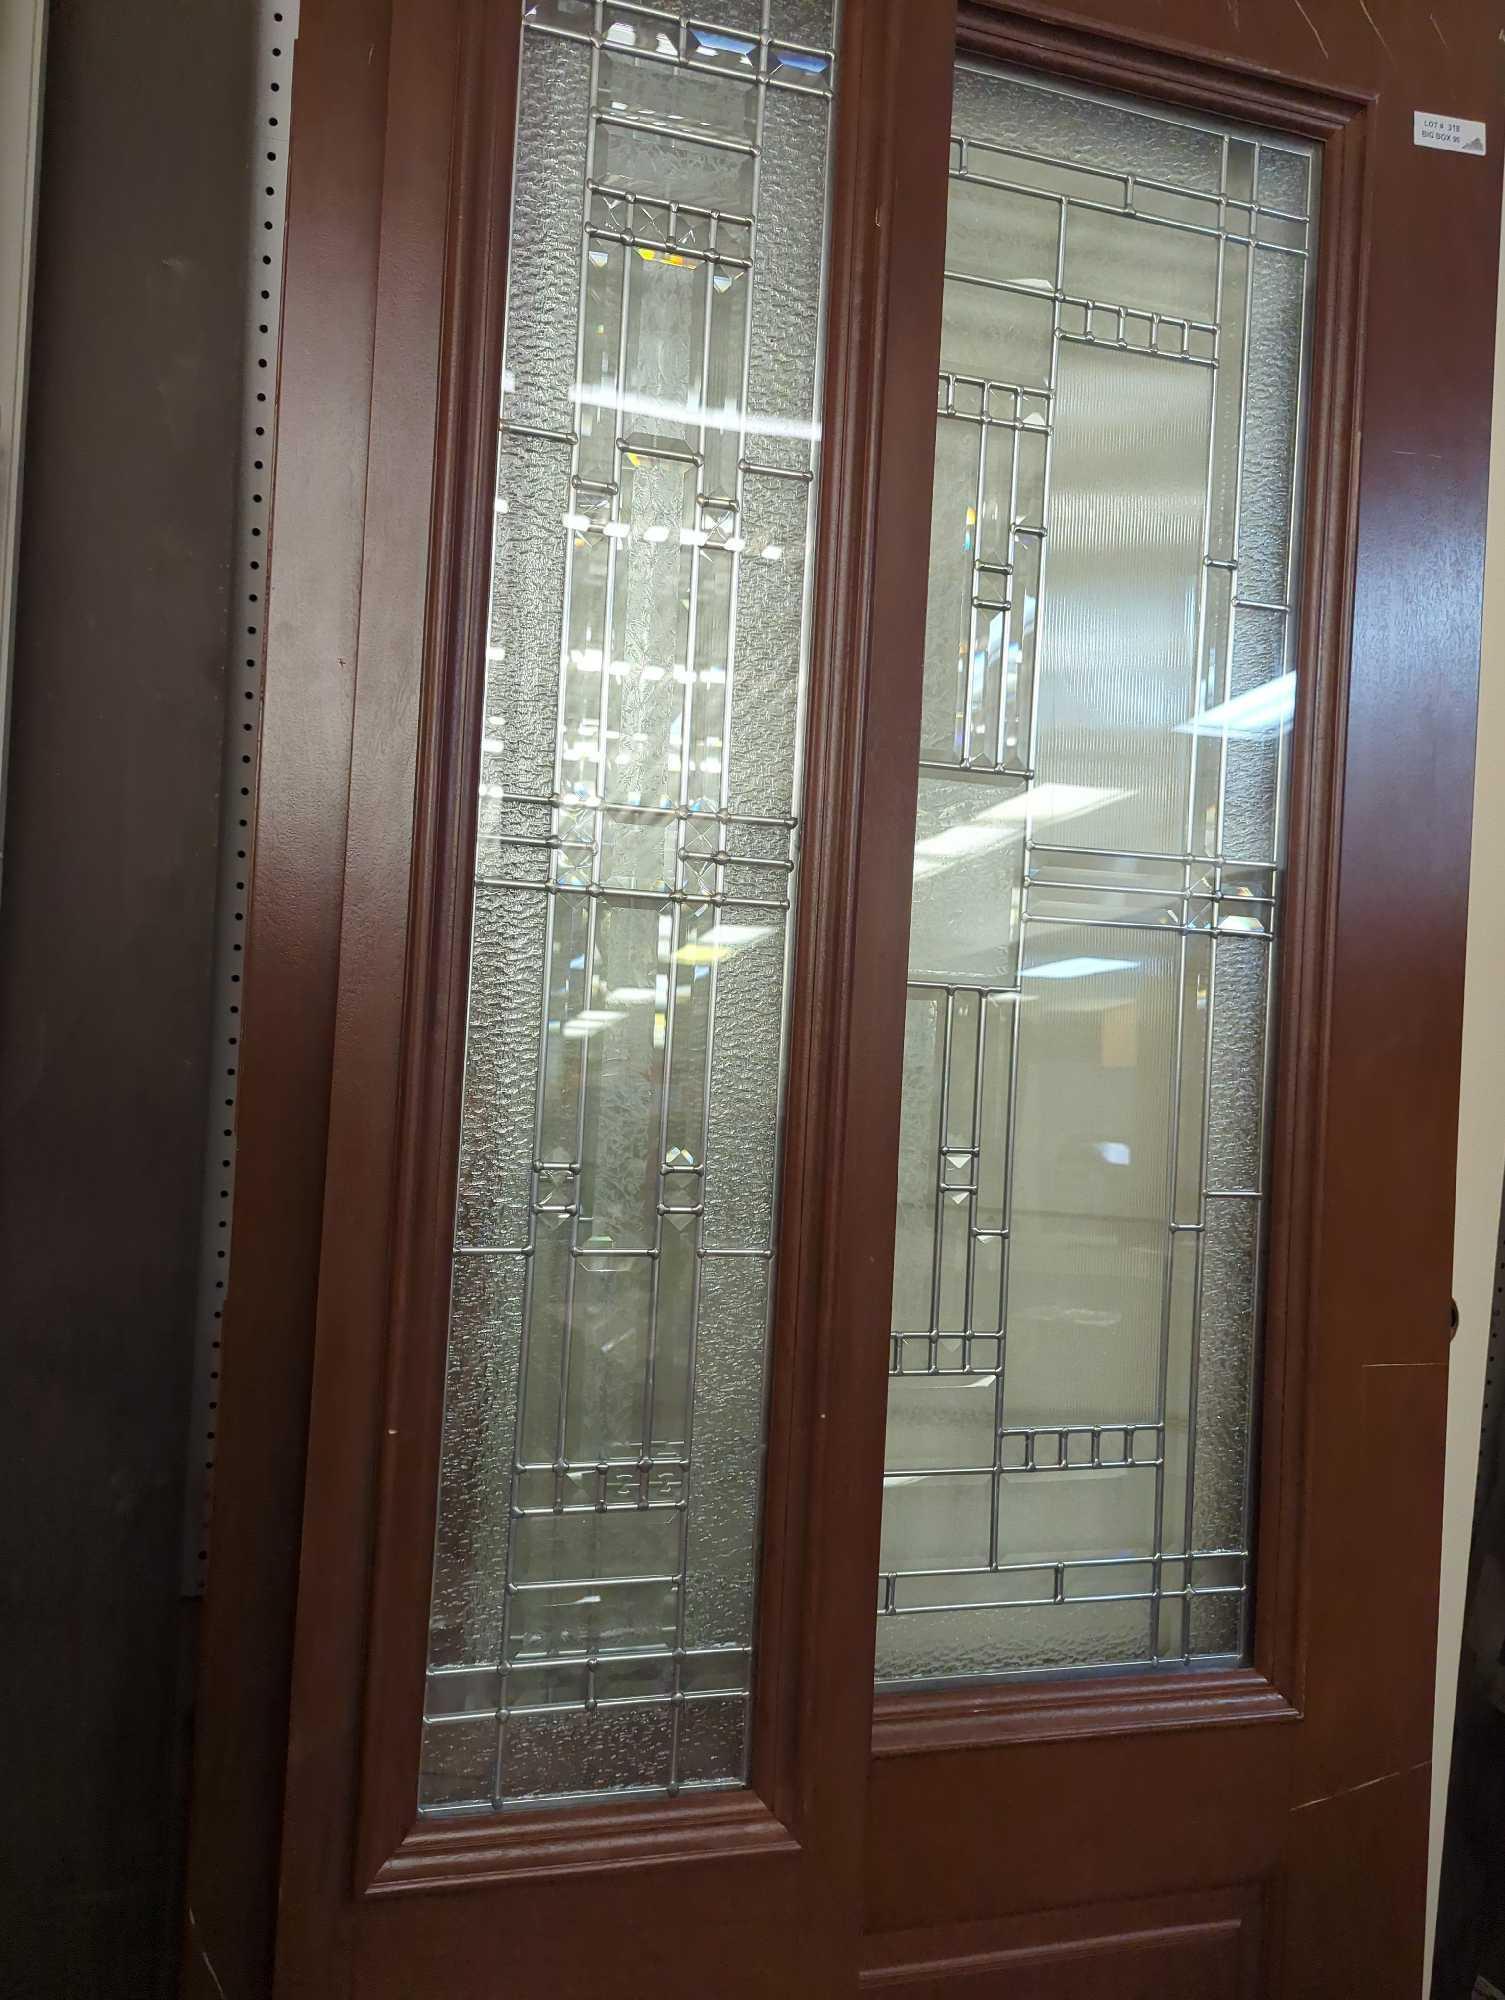 (Store Model Door) Feather River Doors Preston Zinc 3/4 Lite With One Side Lite in Color Chocolate,